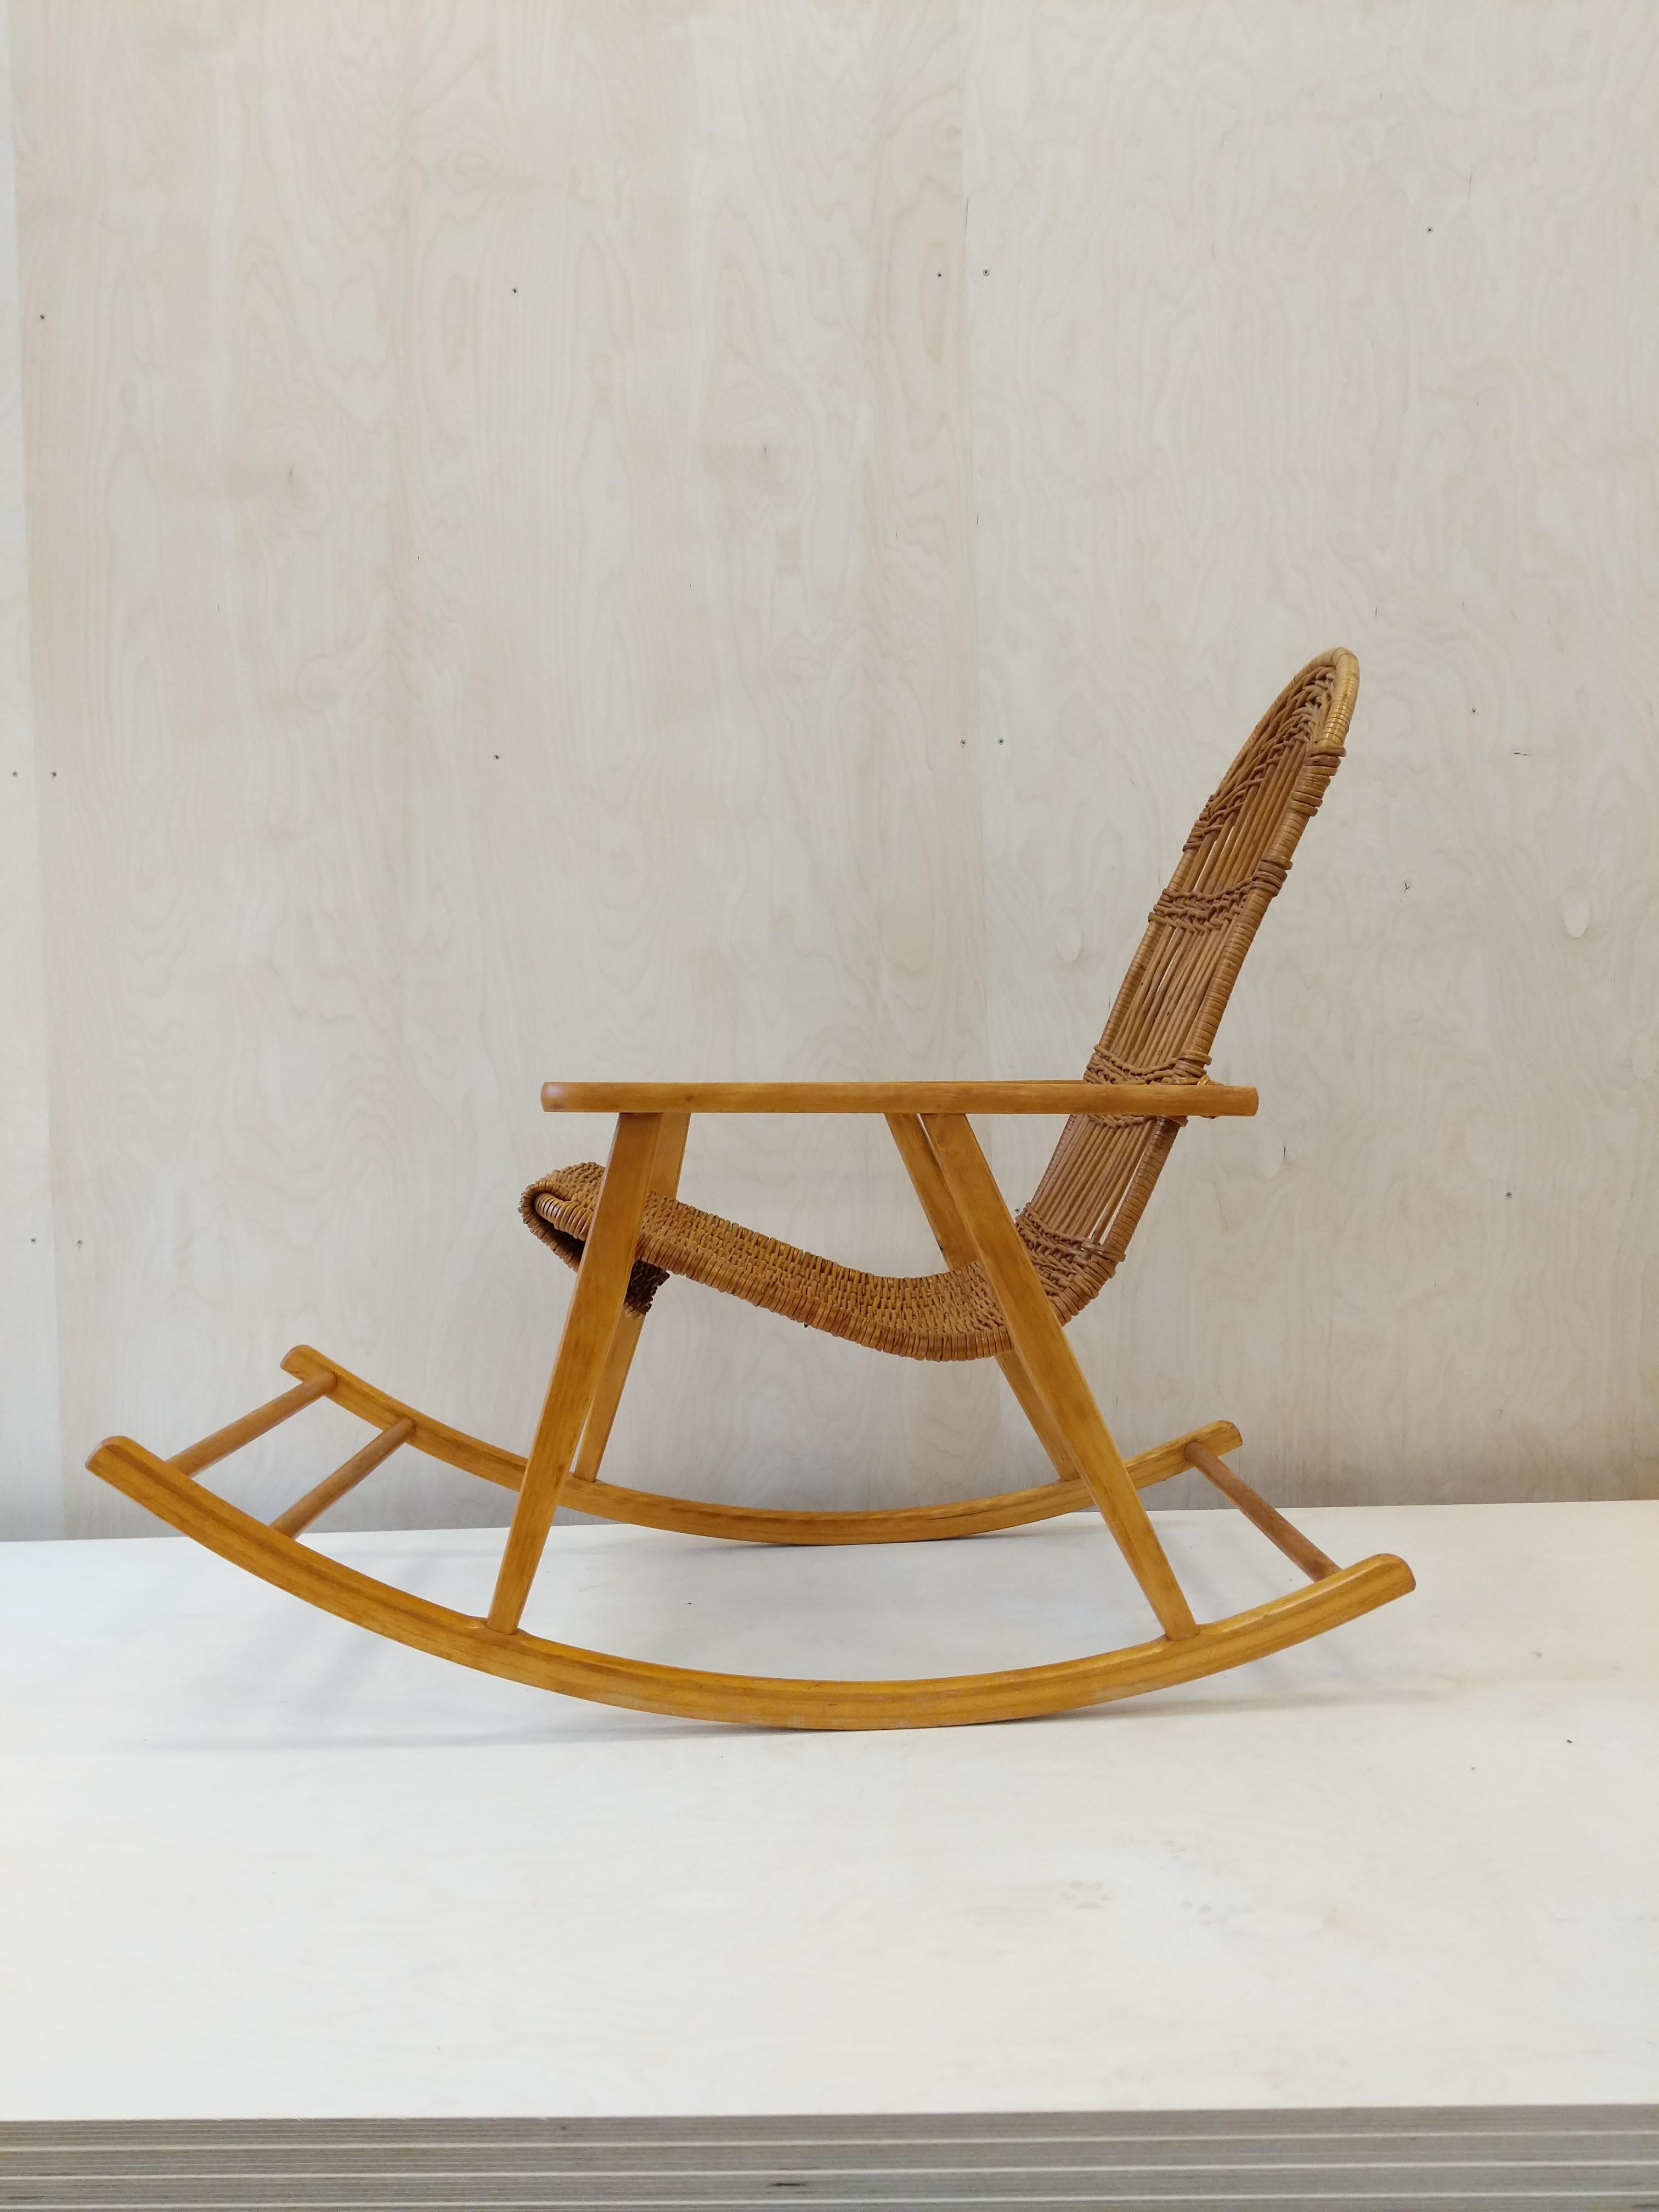 Authentischer tschechischer Vintage-Schaukelstuhl aus der Mitte des Jahrhunderts.

Dieser Stuhl ist in einem ausgezeichneten Vintage-Zustand mit sehr wenigen altersbedingten Gebrauchsspuren (siehe Fotos).

Wenn Sie weitere Informationen wünschen,